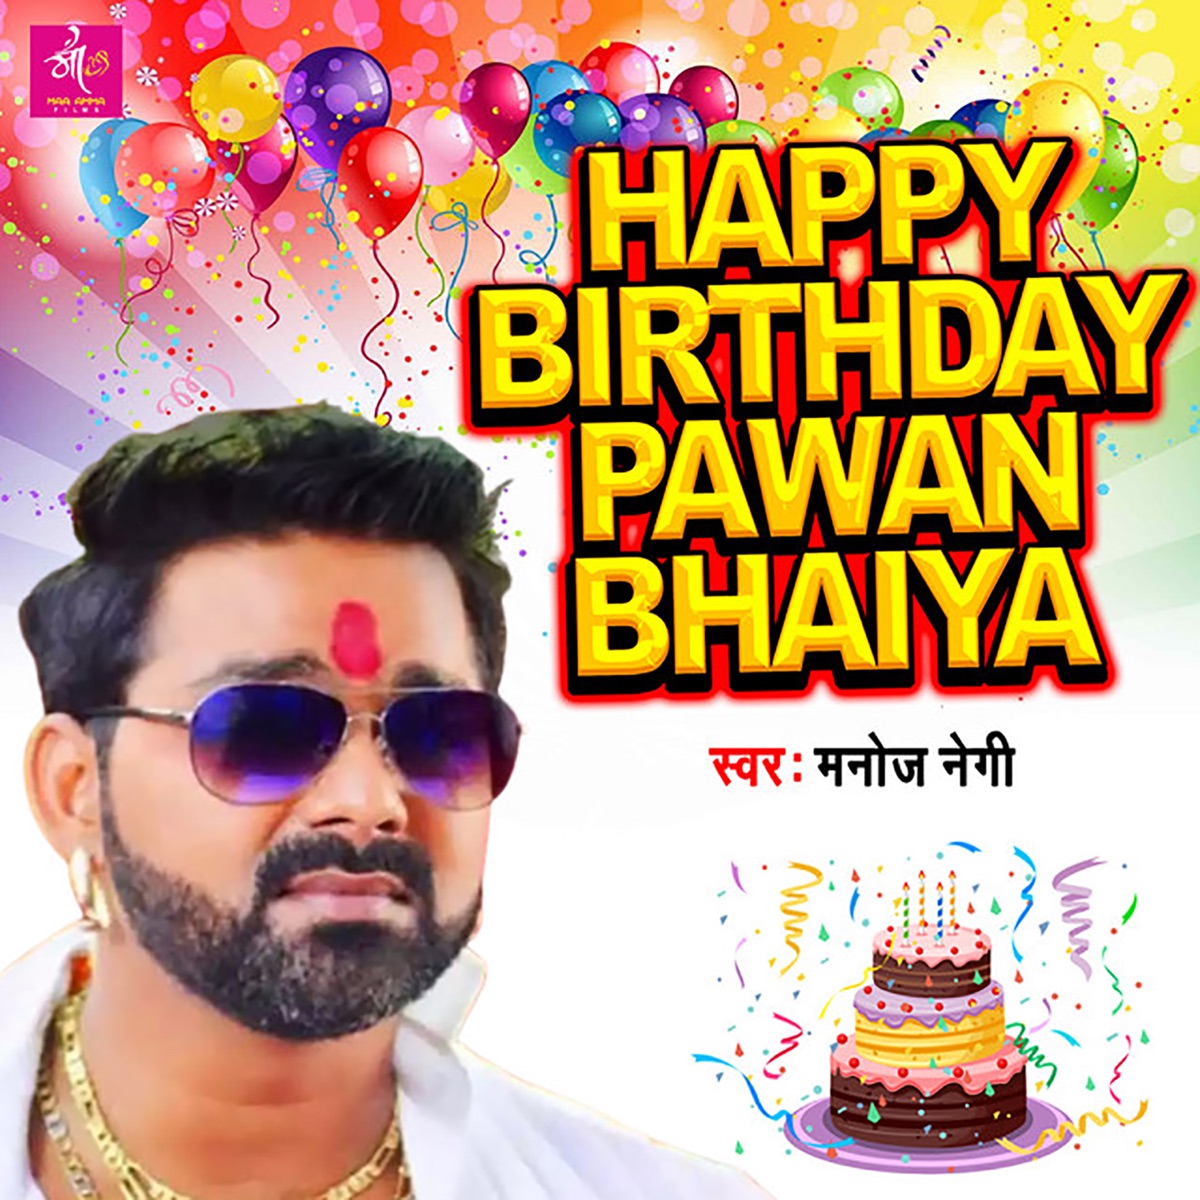 Happy Birthday Pawan Bhaiya - Single by Manojj Negi on Apple Music